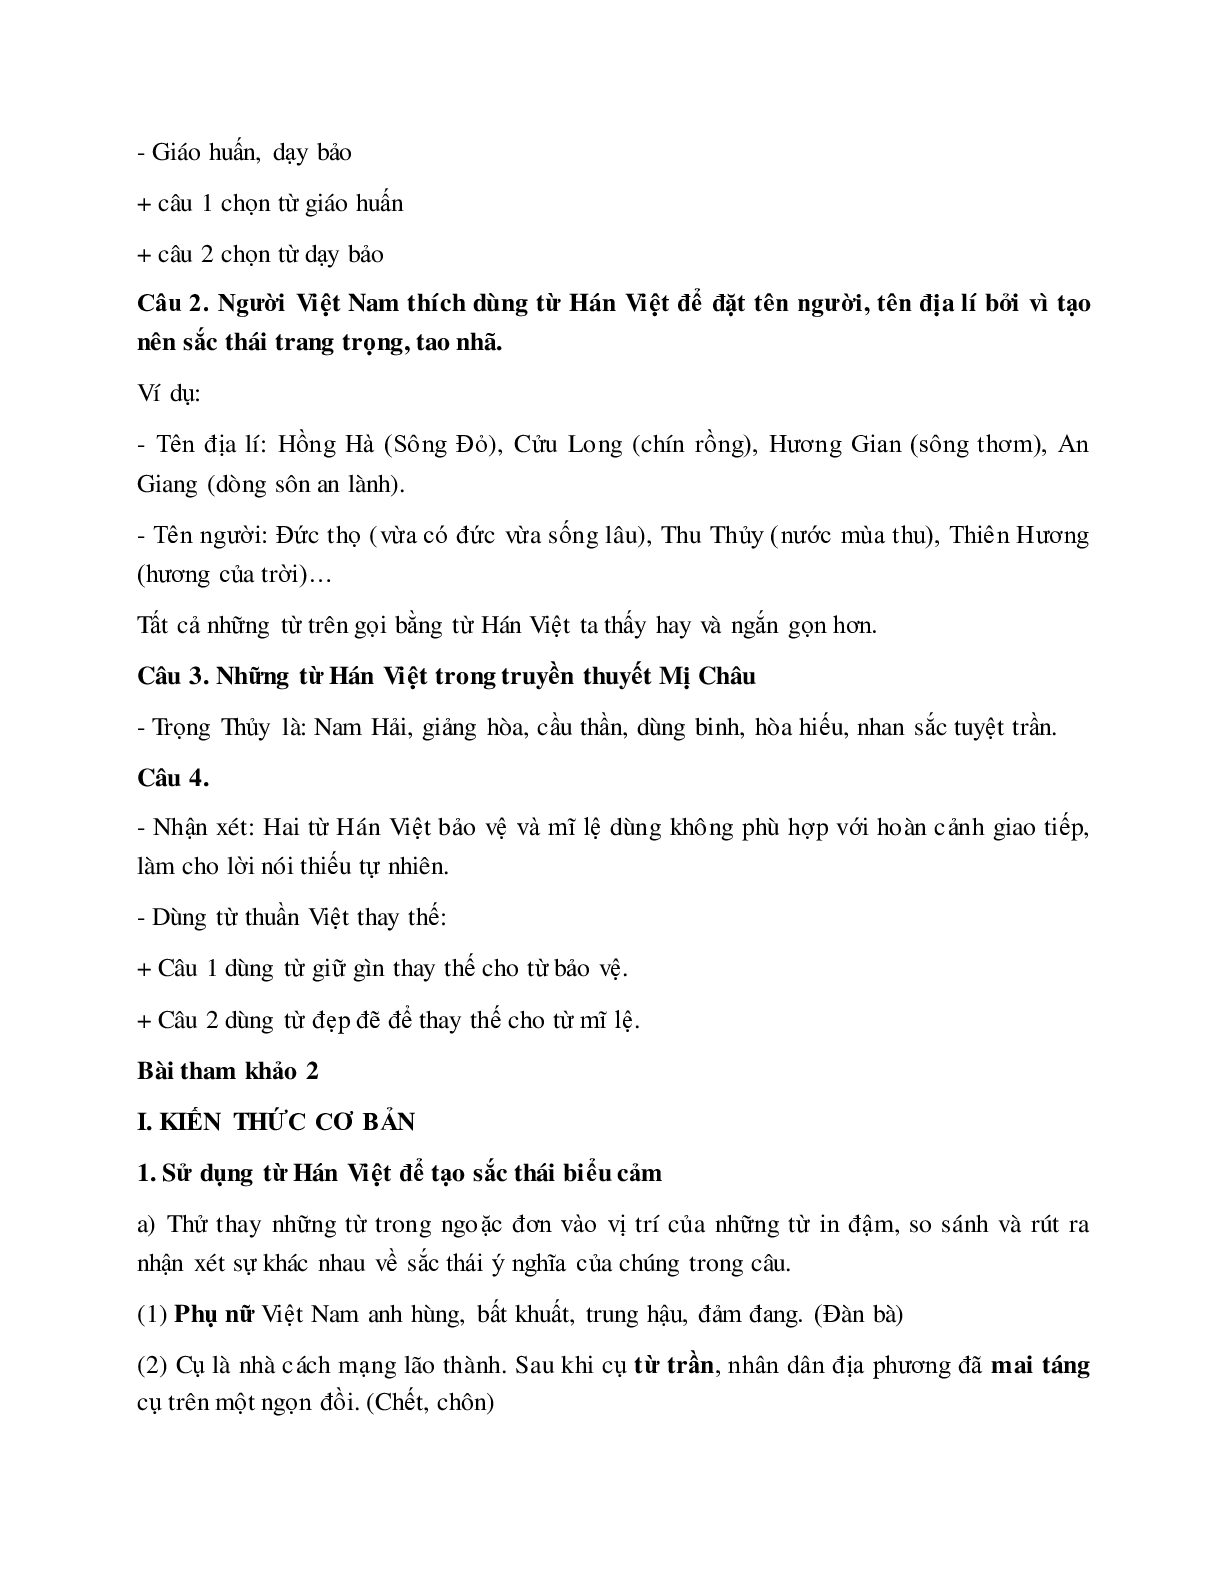 Soạn bài Từ Hán việt (tiếp theo) - ngắn nhất Soạn văn 7 (trang 2)